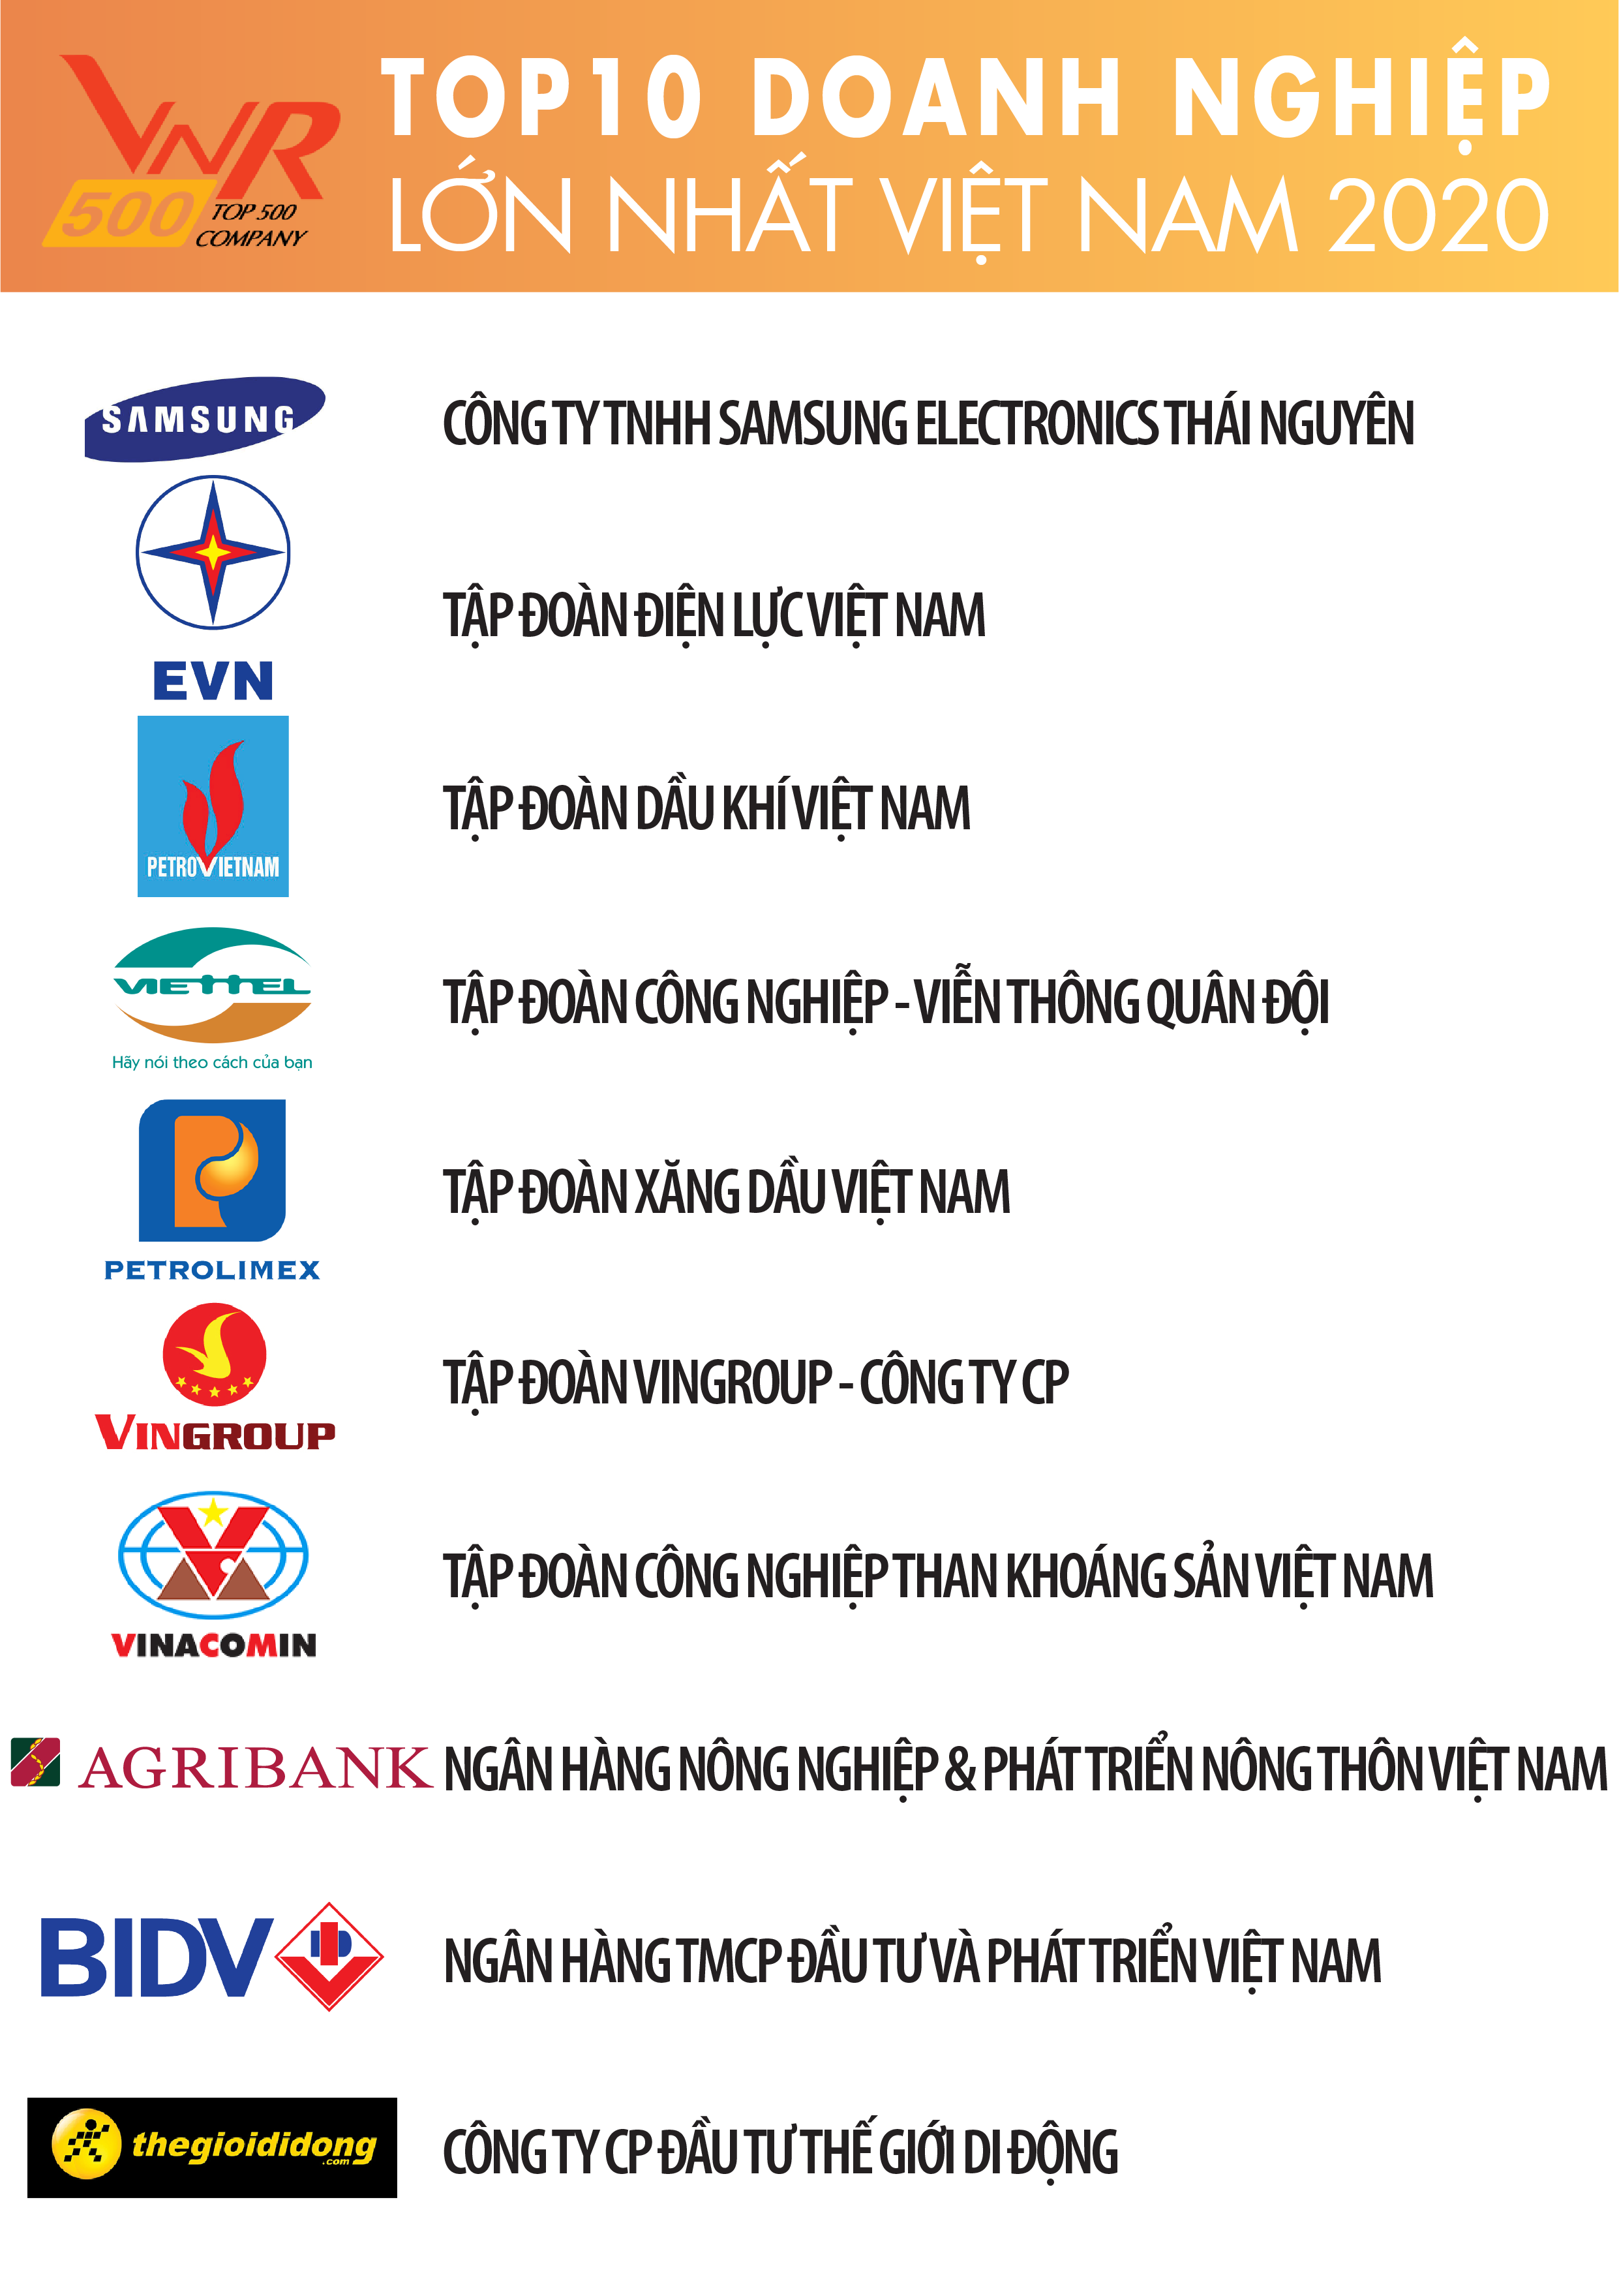 Petrovietnam giữ vững vị trí trong Top 3 doanh nghiệp lớn nhất Việt Nam 10 năm liên tiếp